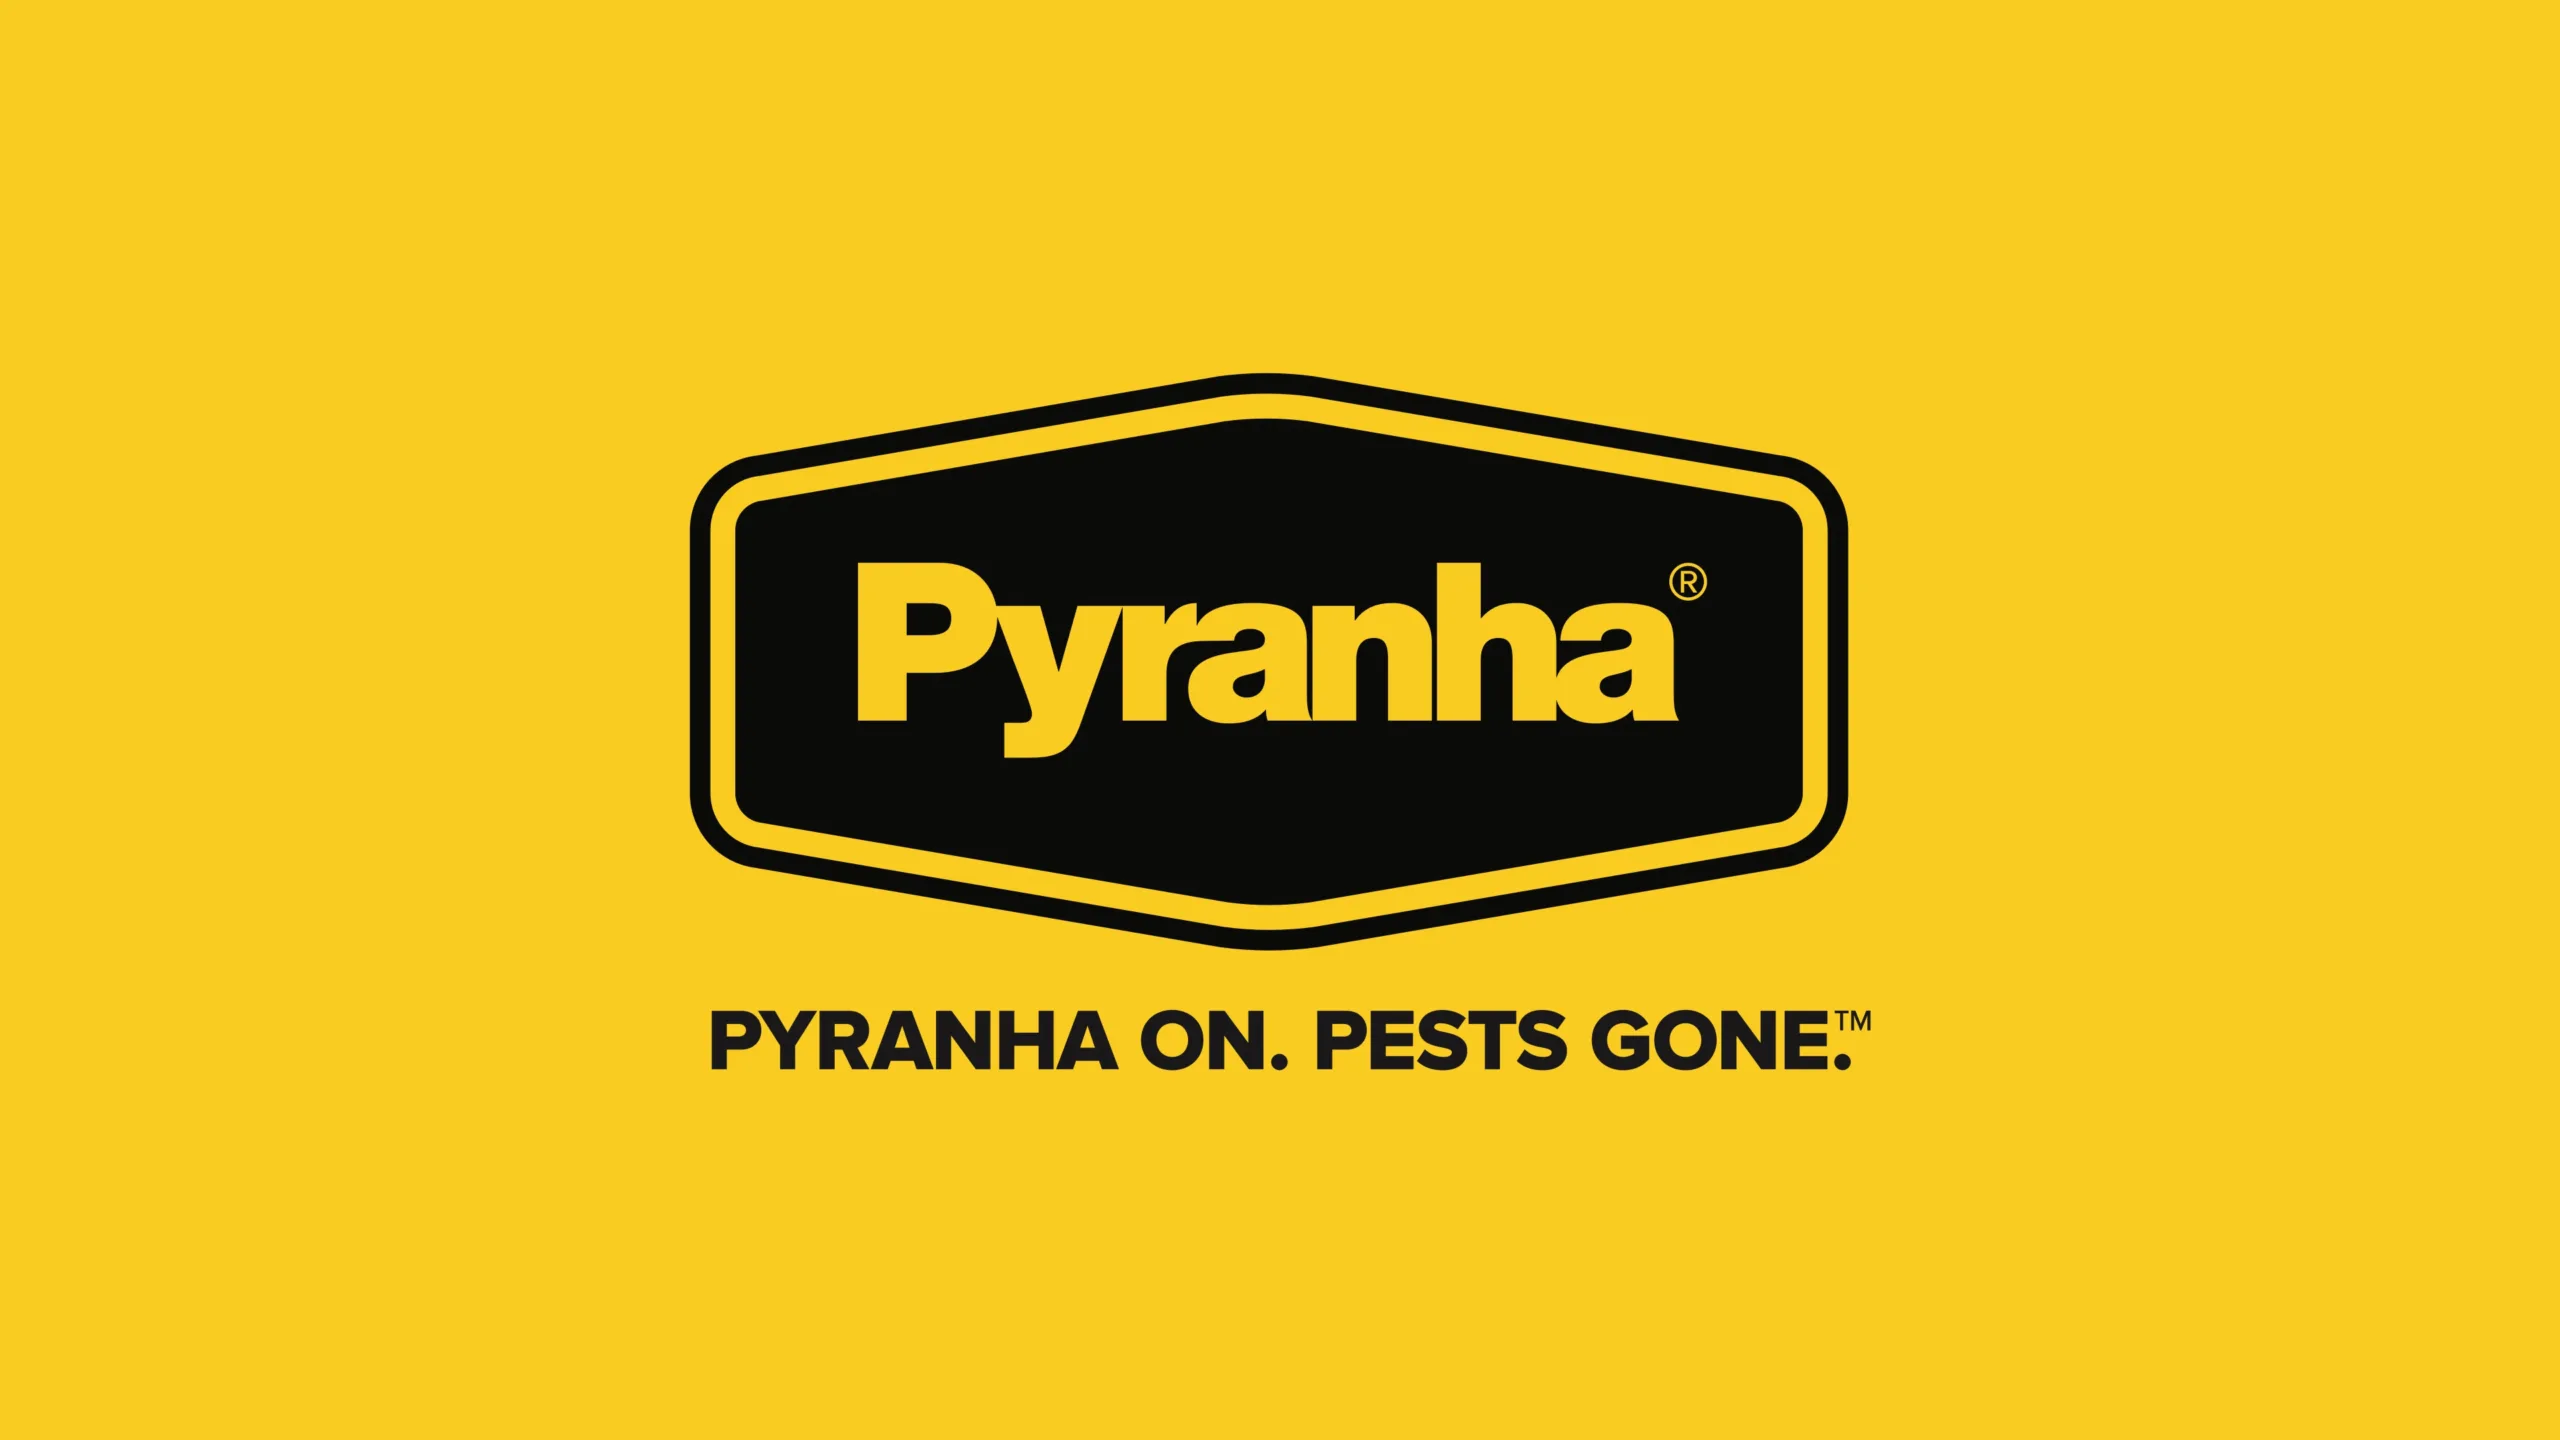 Pyranha branding - logo design